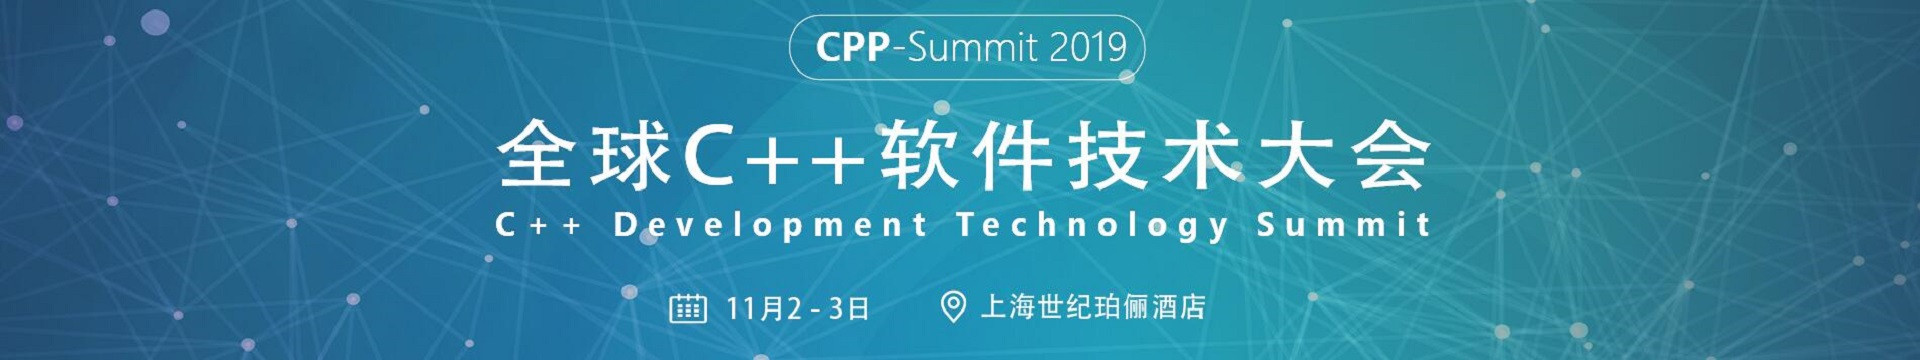 2019全球C++软件技术大会 CPP-Summit